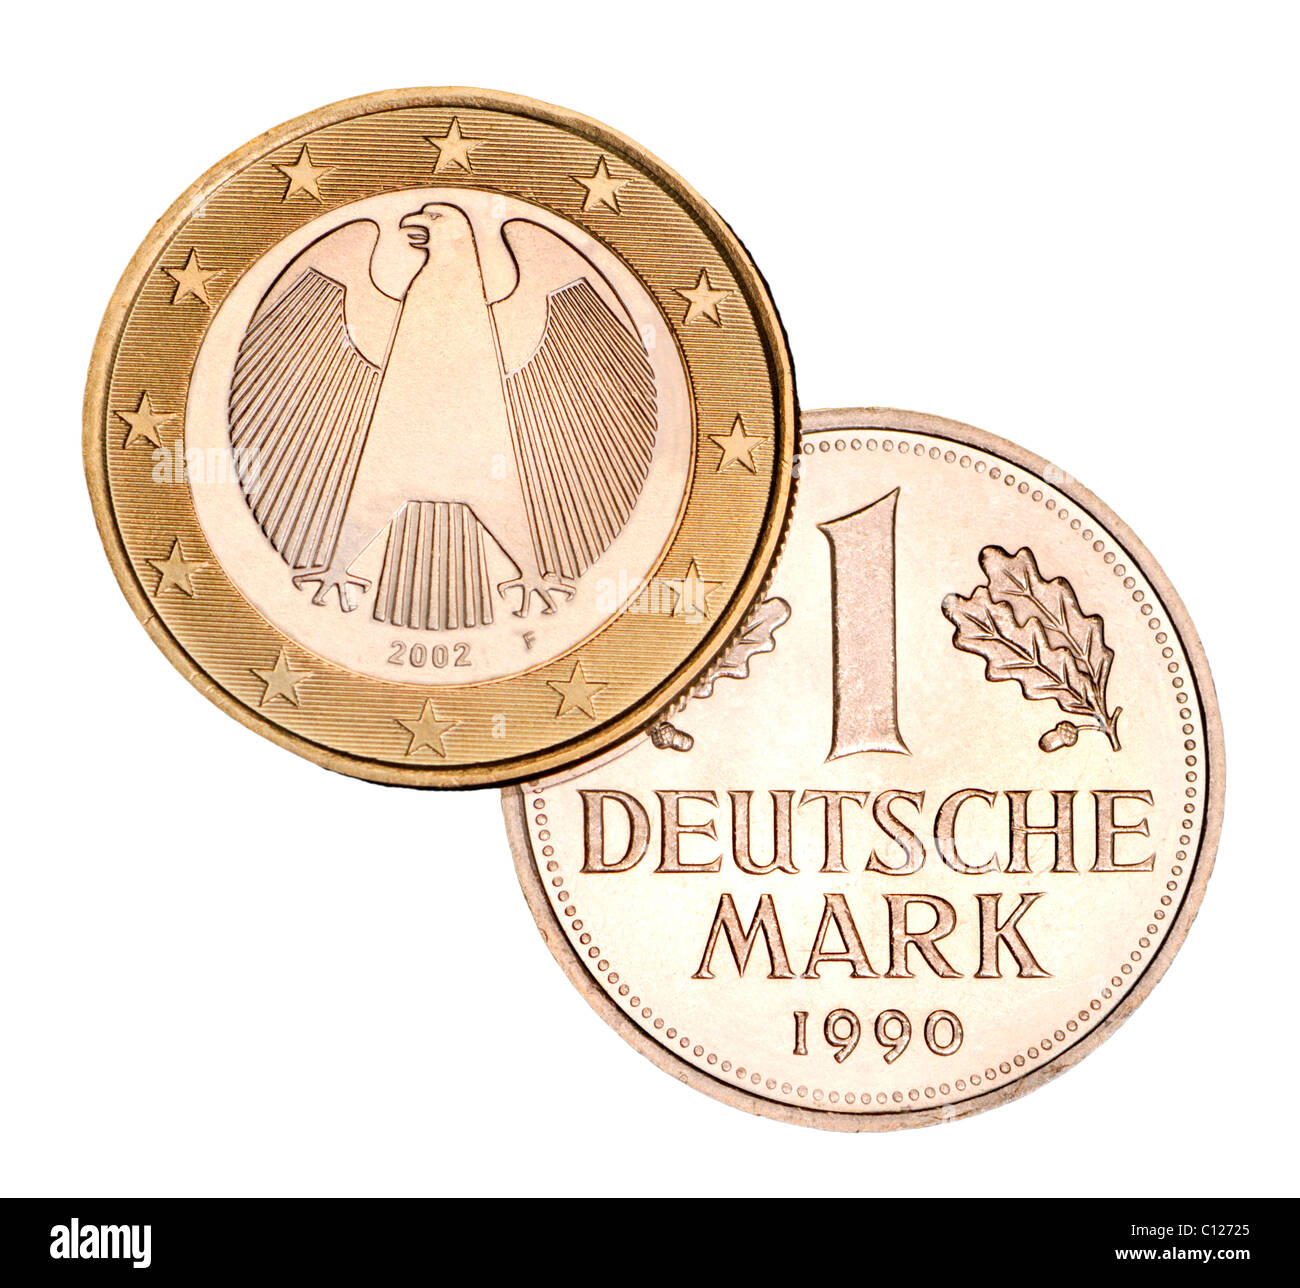 Tedesco 1 Euro moneta da 2002 e pre-Euro 1 marco tedesco moneta da 1990 Foto Stock